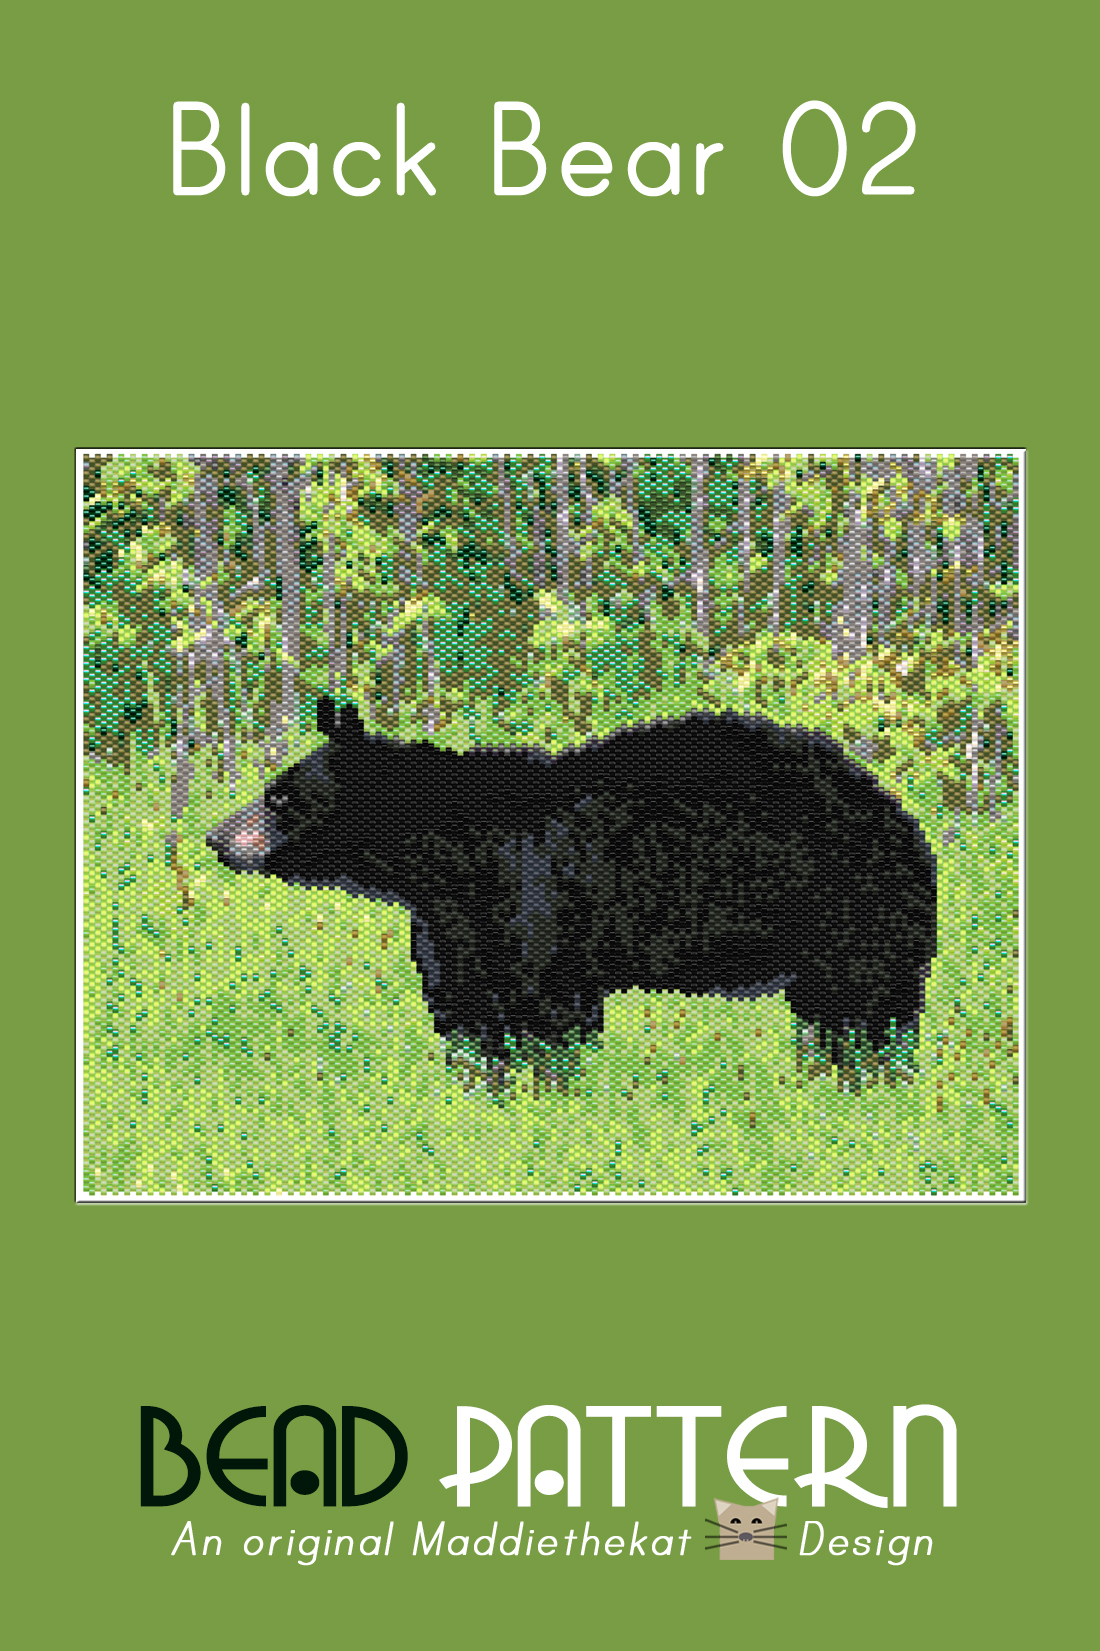 Black Bear 02 Larger Peyote Bead Pattern PDF